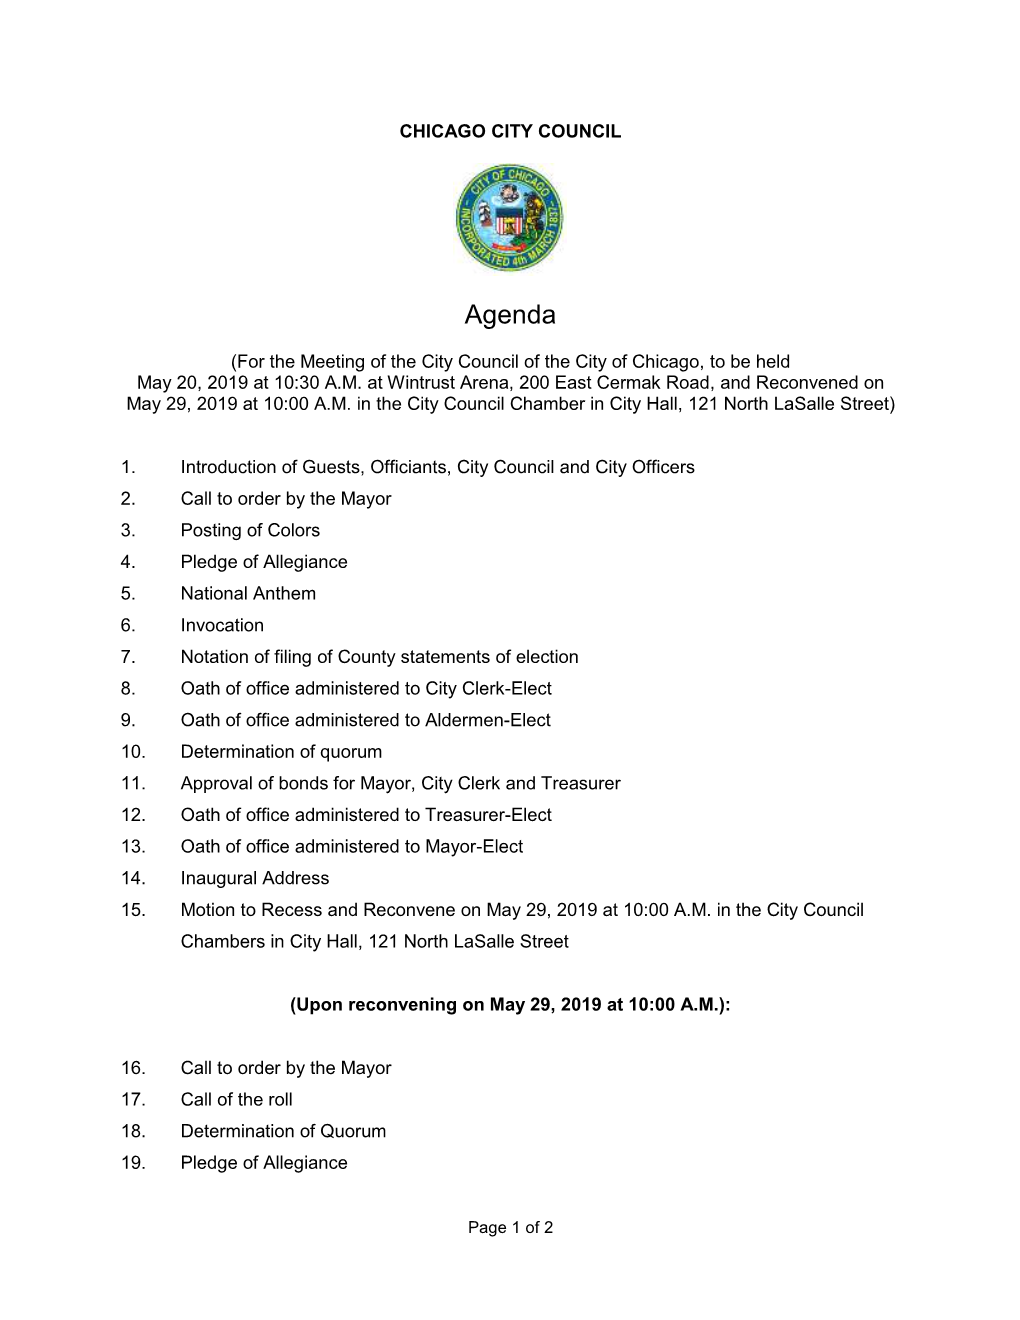 05-20-2019 Inaugural/Reconvened Meeting Agenda